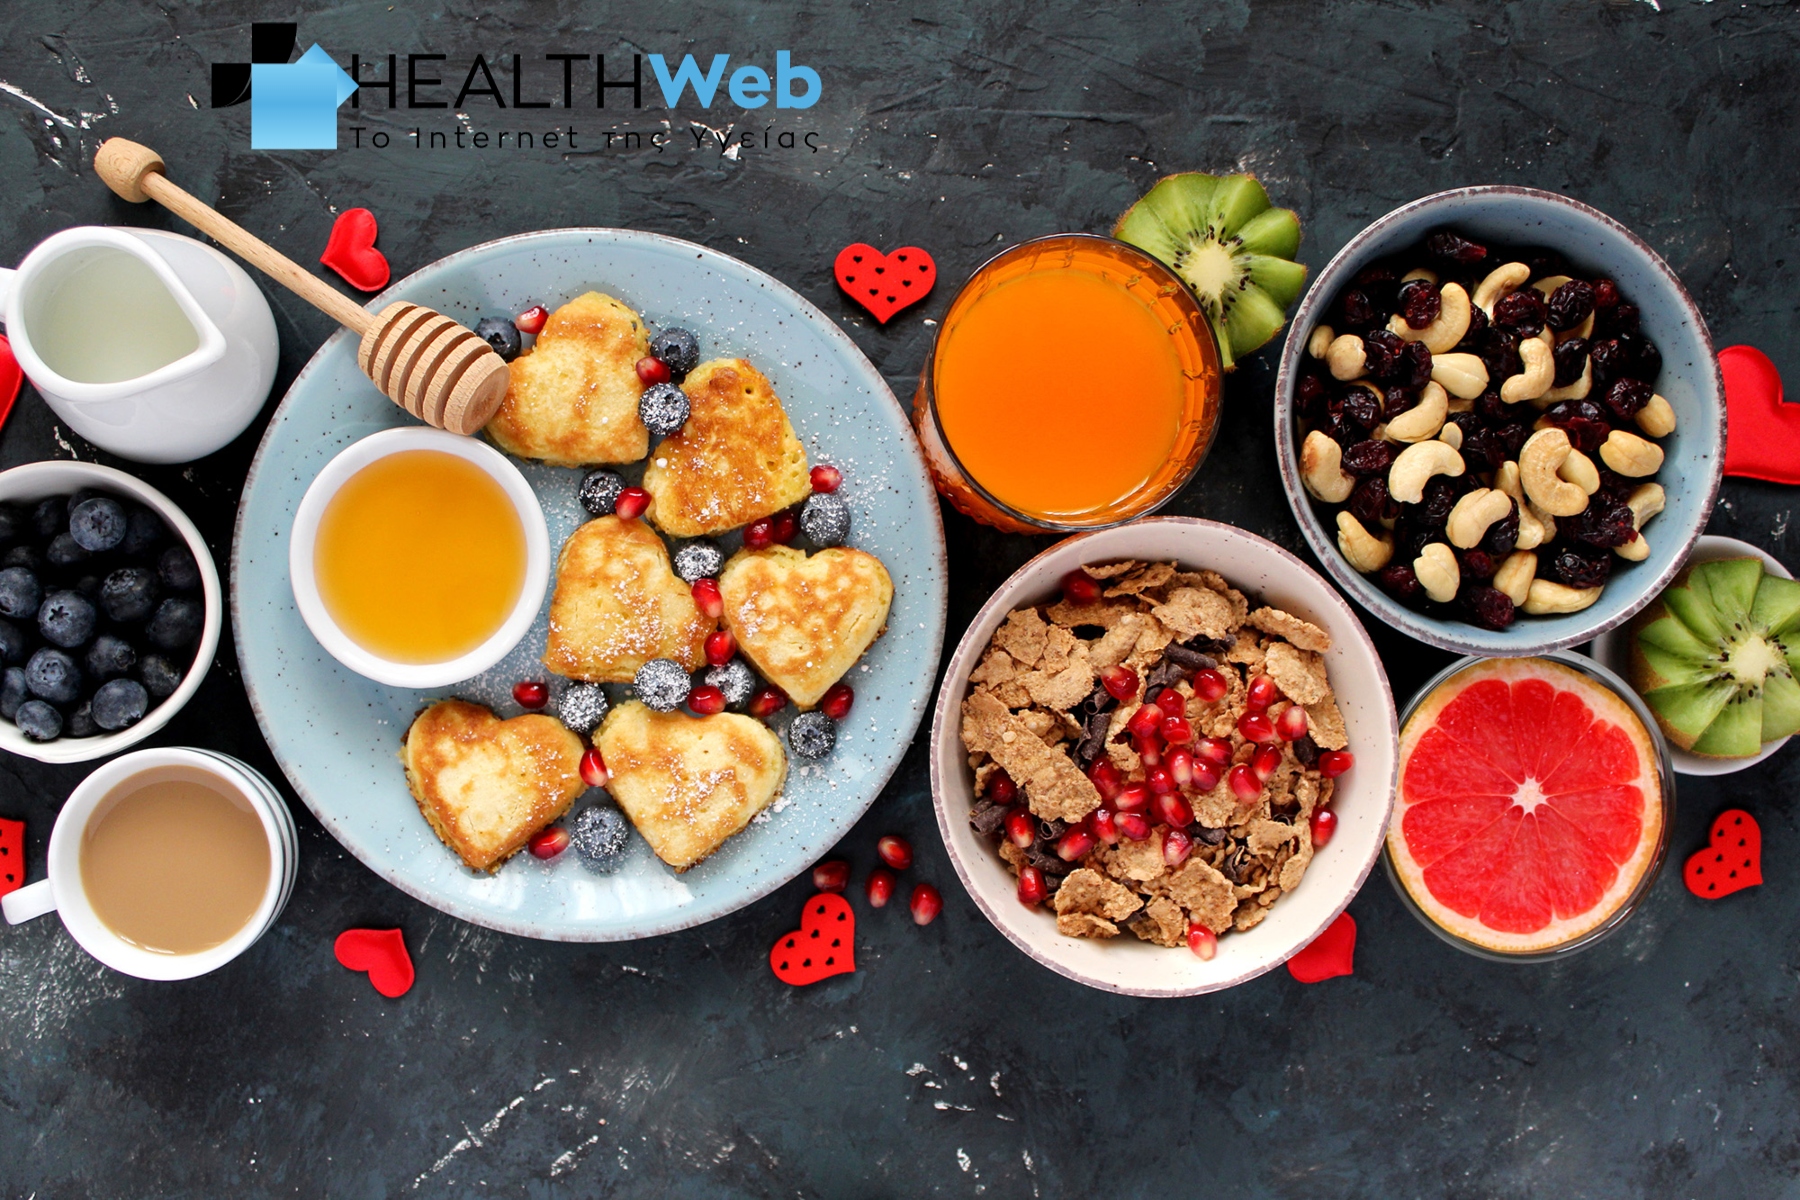 Πρωινό: Ποιες 2 επιλογές αυξάνουν τον κίνδυνο καρδιακών παθήσεων;